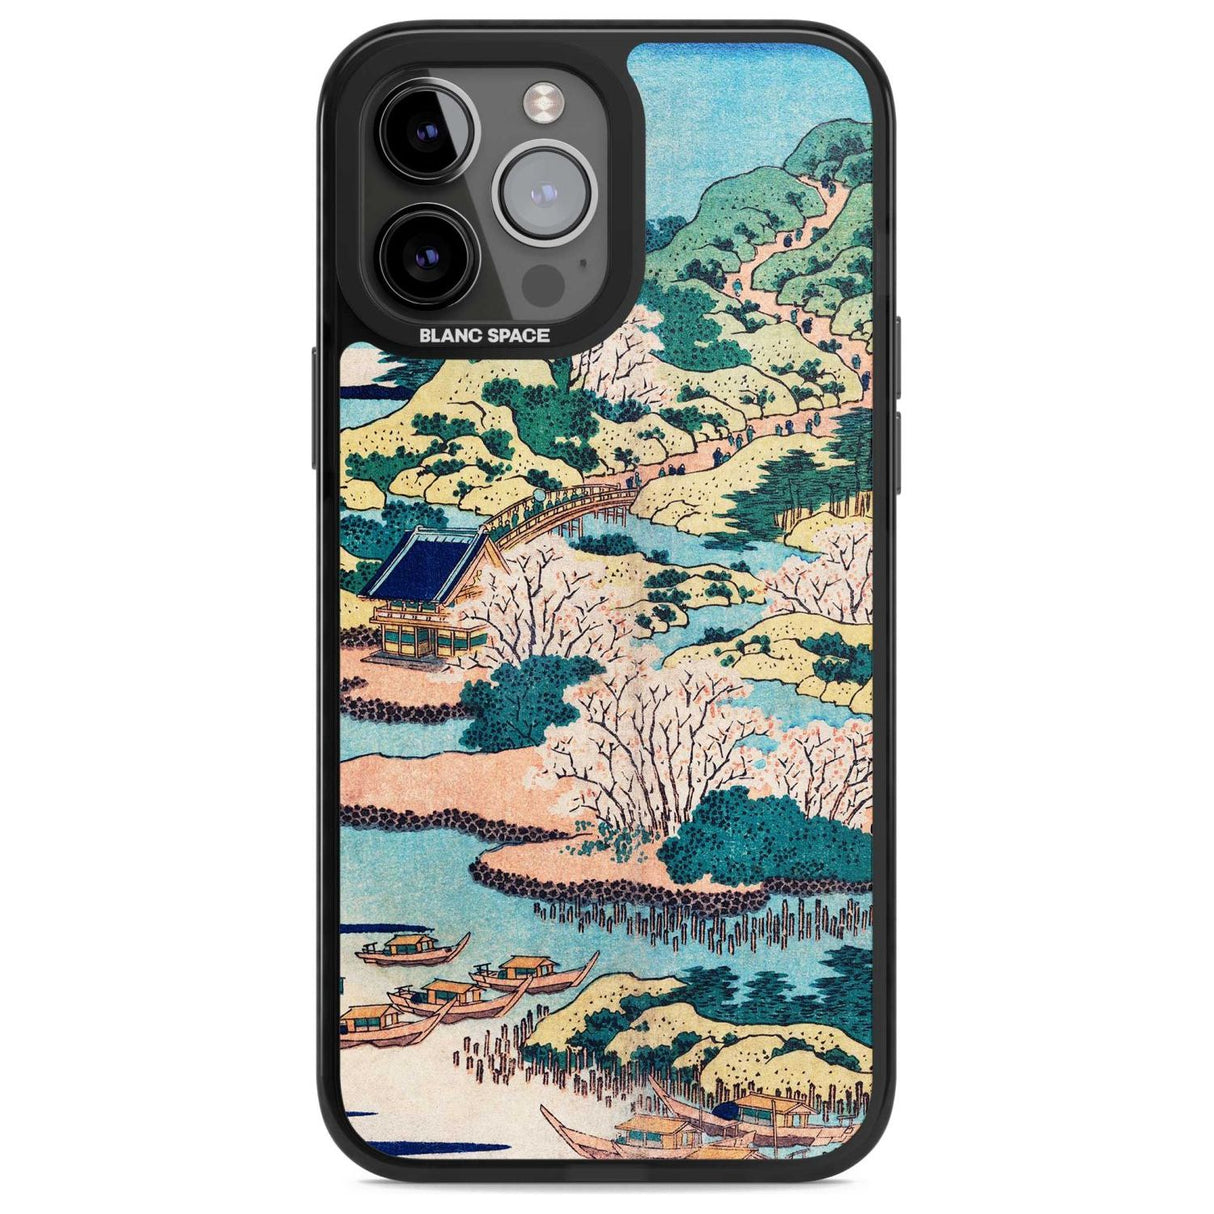 Coastal Community by Katsushika Hokusai Phone Case iPhone 13 Pro Max / Magsafe Black Impact Case Blanc Space